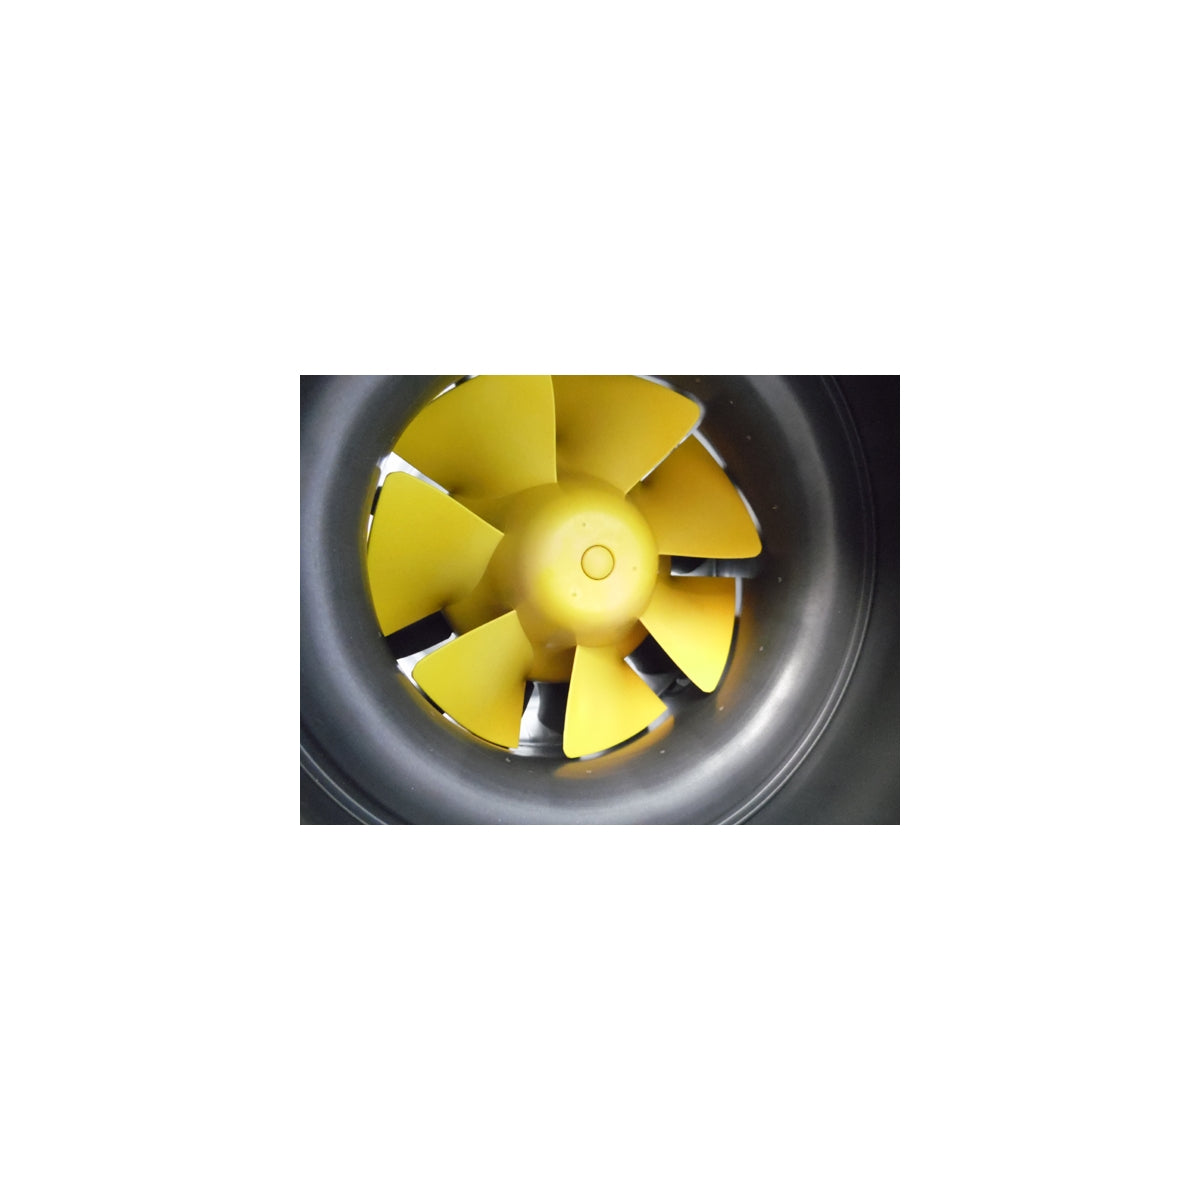 MAX-Fan Pro 150 Absaugung – 470 und 600 m3/h – Can-Fan